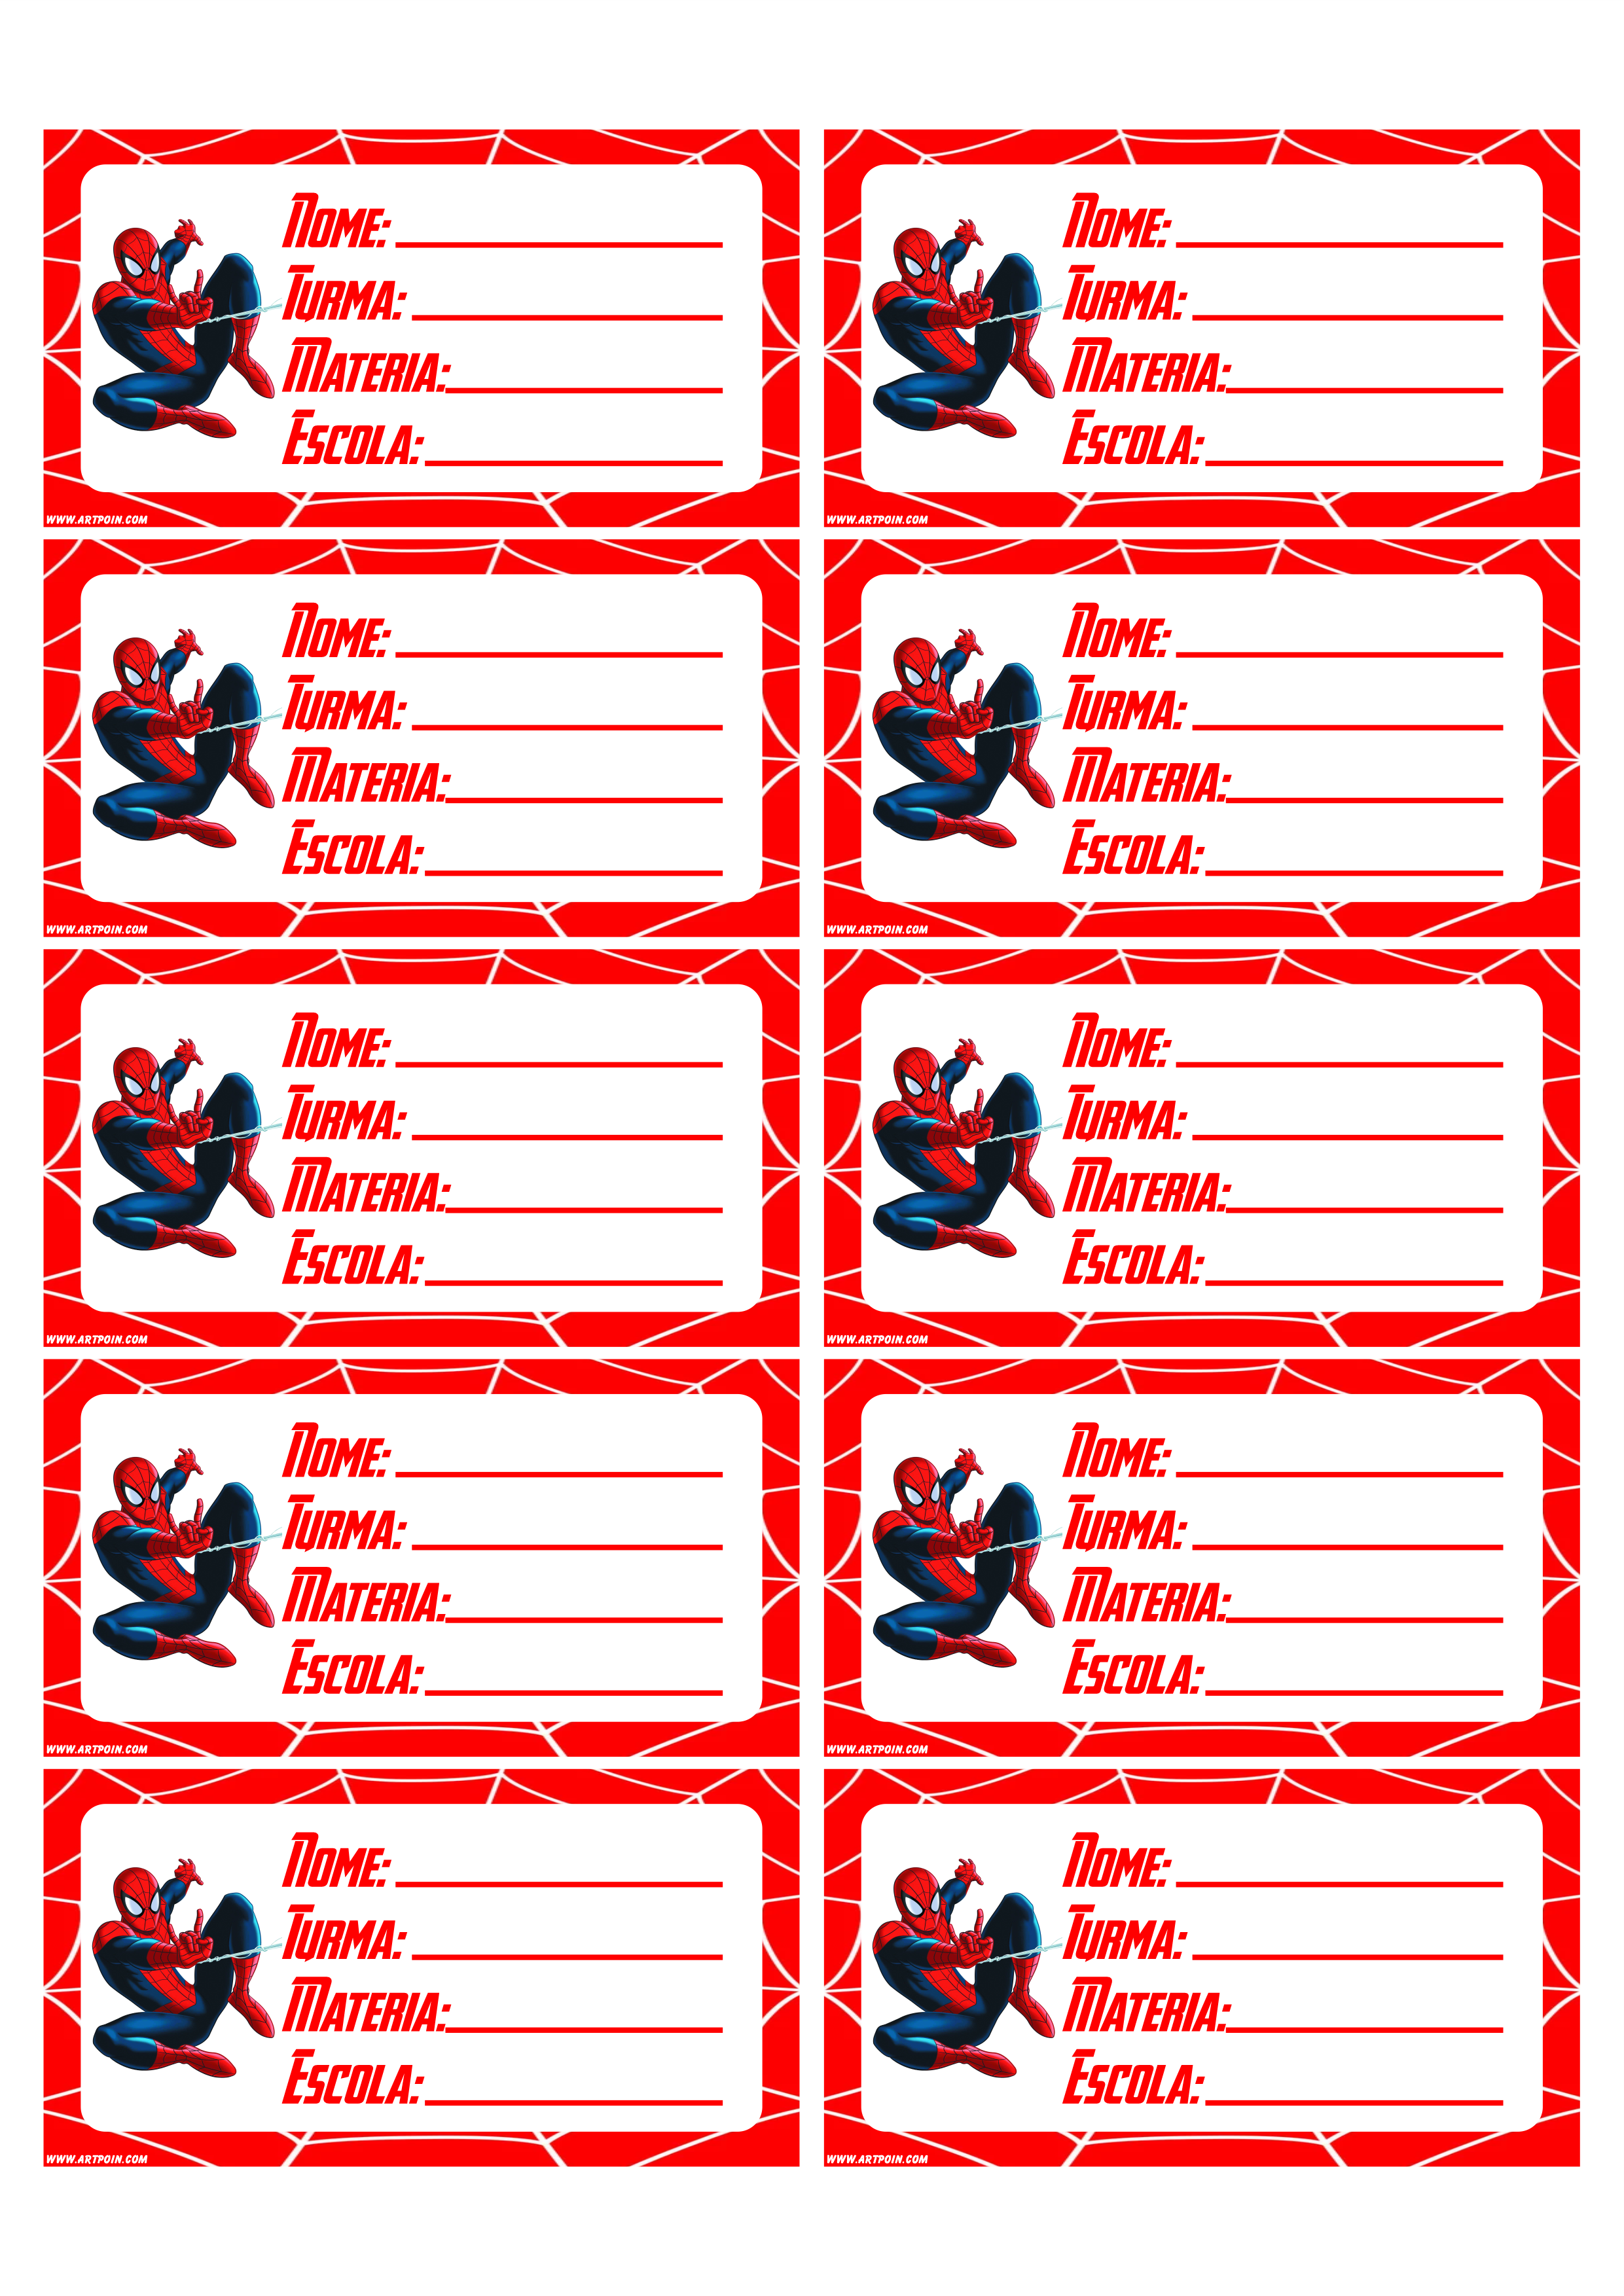 Etiquetas personalizadas para material escolar homem aranha 10 tags prontas para imprimir png